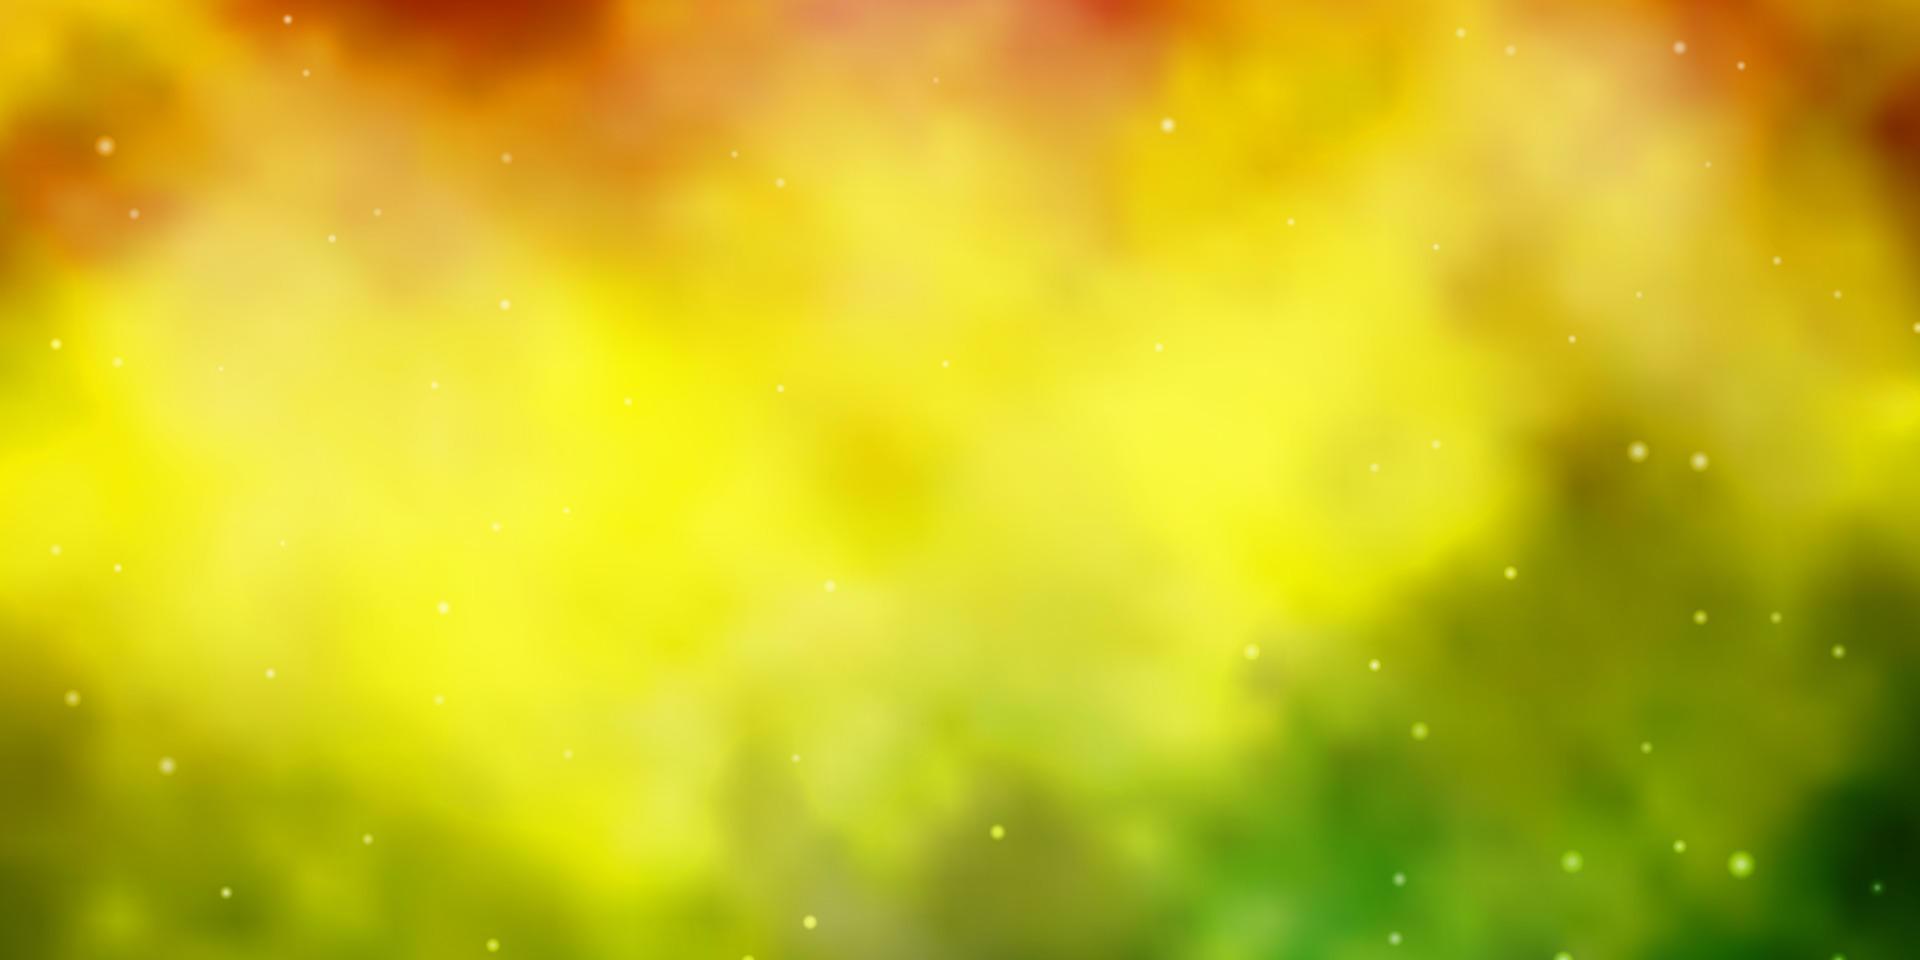 hellgrüne, gelbe Vektorschablone mit Neonsternen. vektor